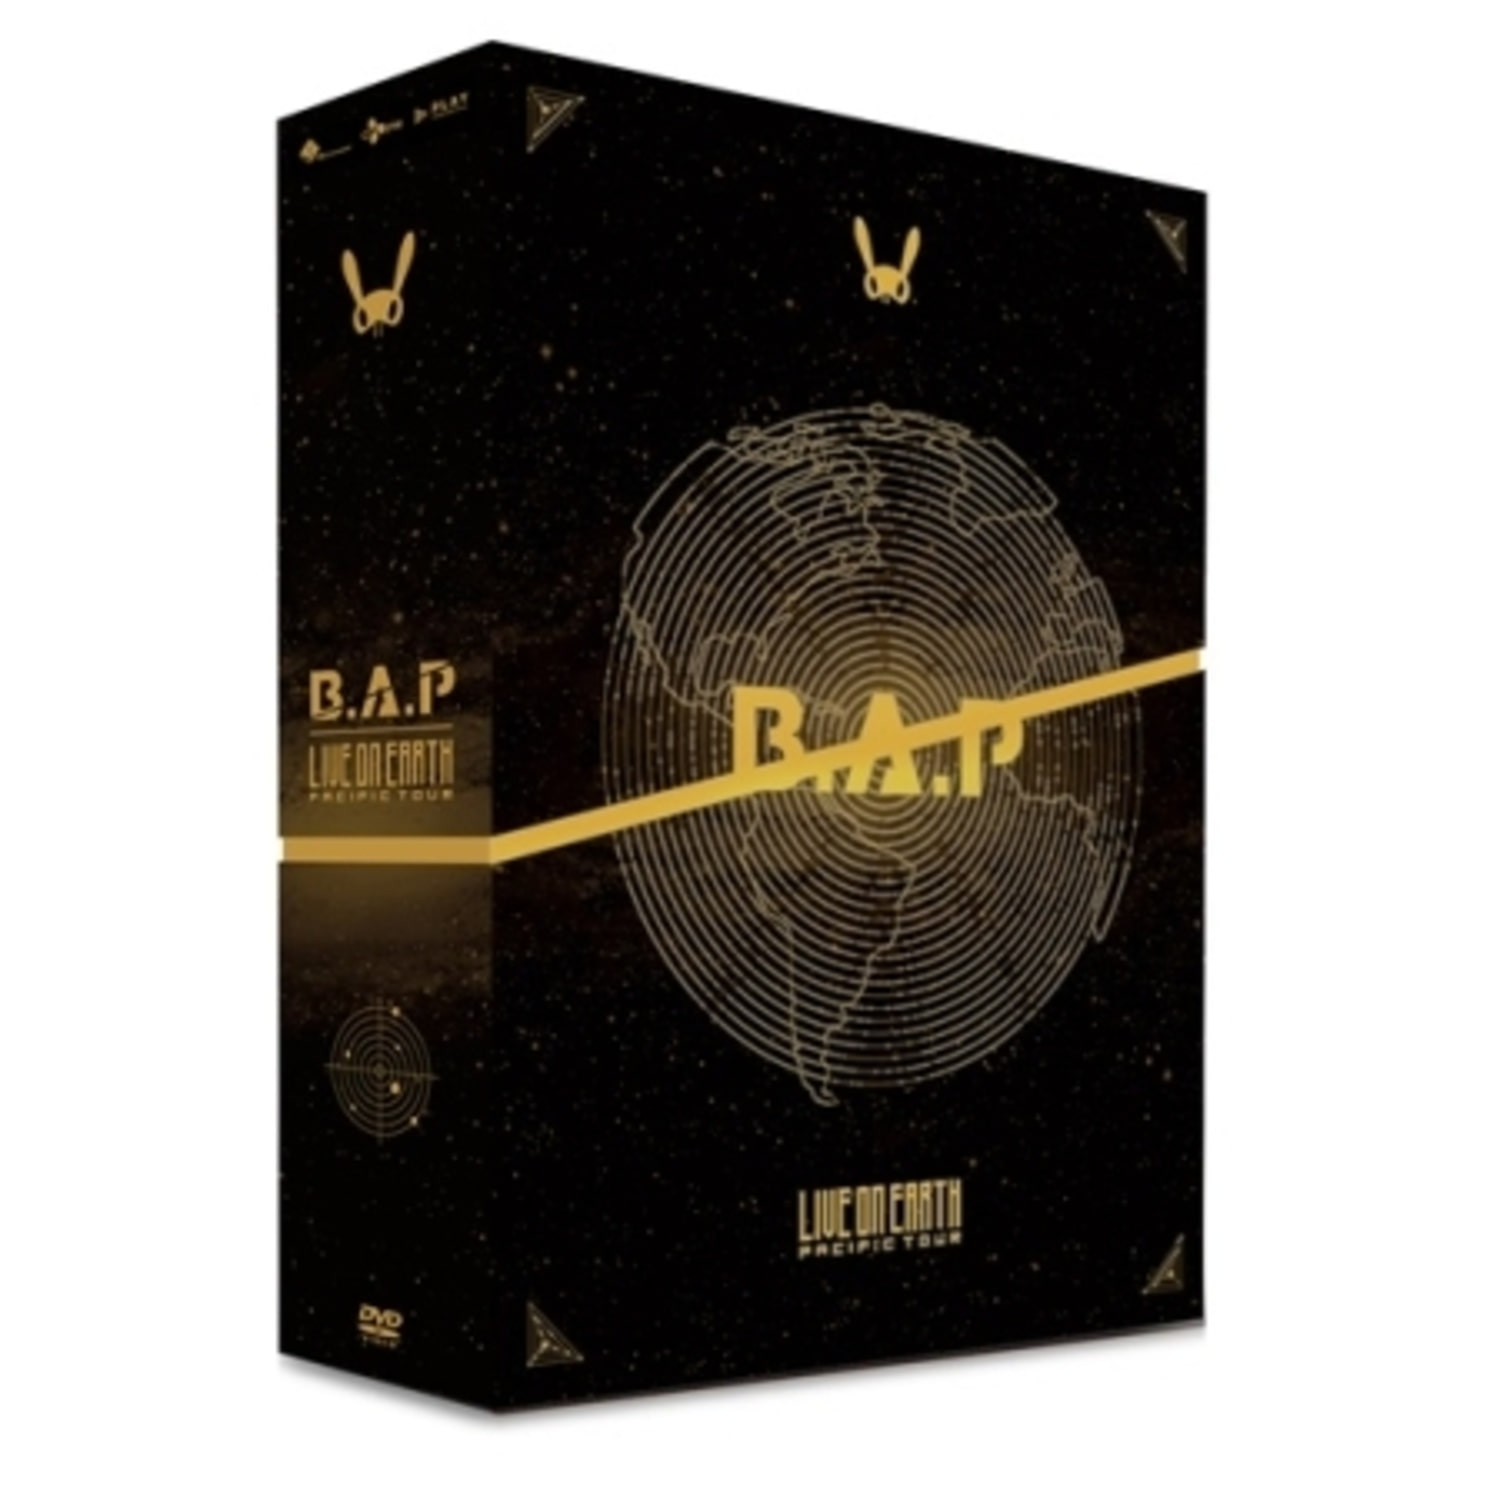 비에이피 (B.A.P) - B.A.P LIVE ON EARTH PACIFIC (3 DVD + 포토북)